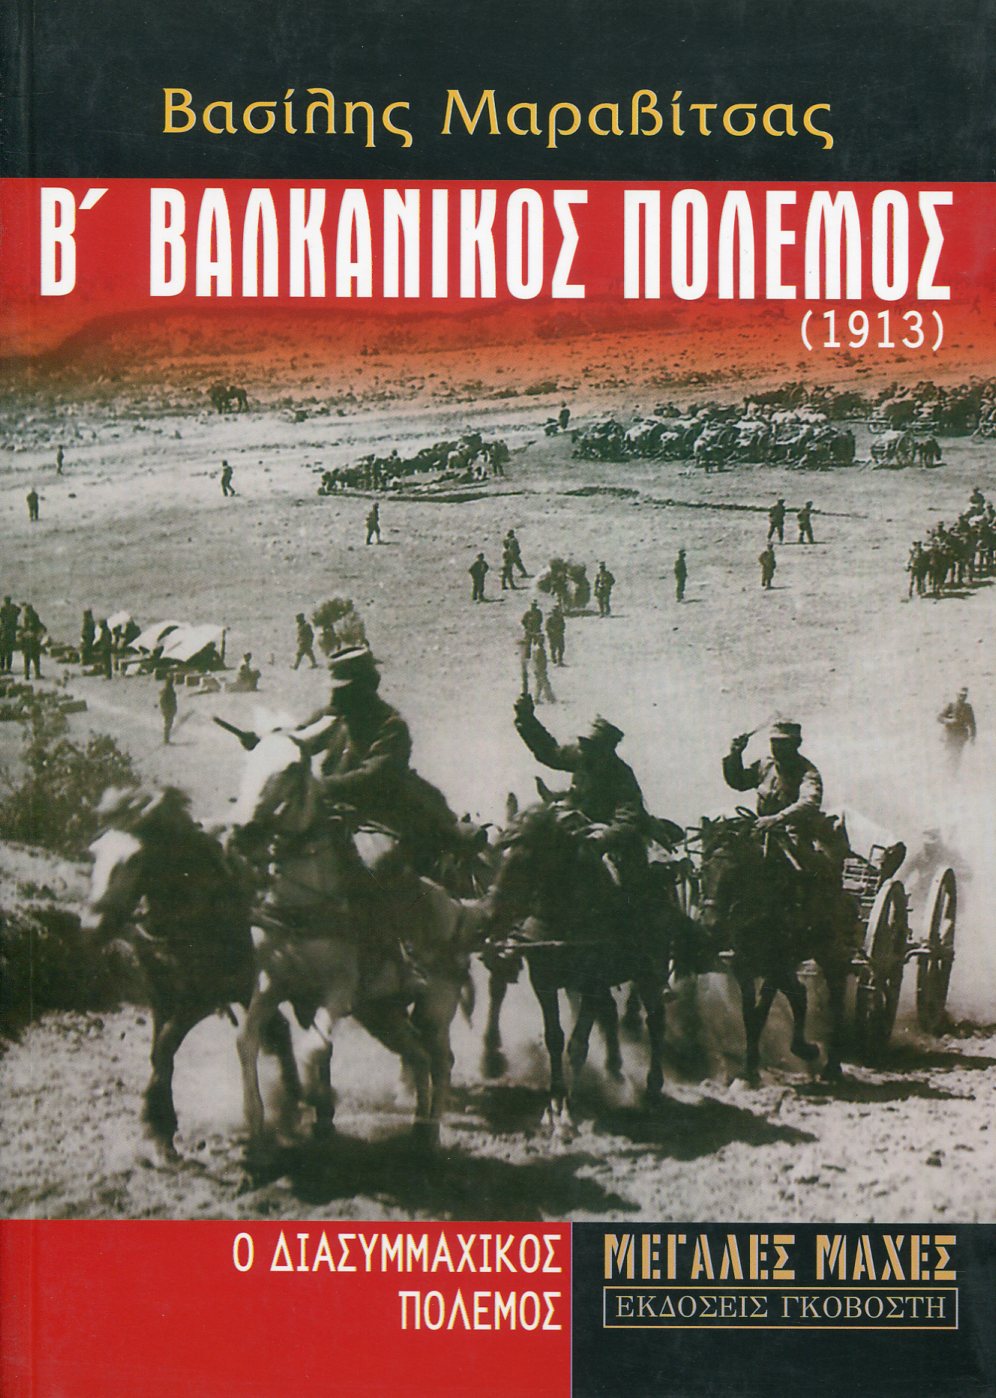 Β ΒΑΛΚΑΝΙΚΟΣ ΠΟΛΕΜΟΣ (1913)